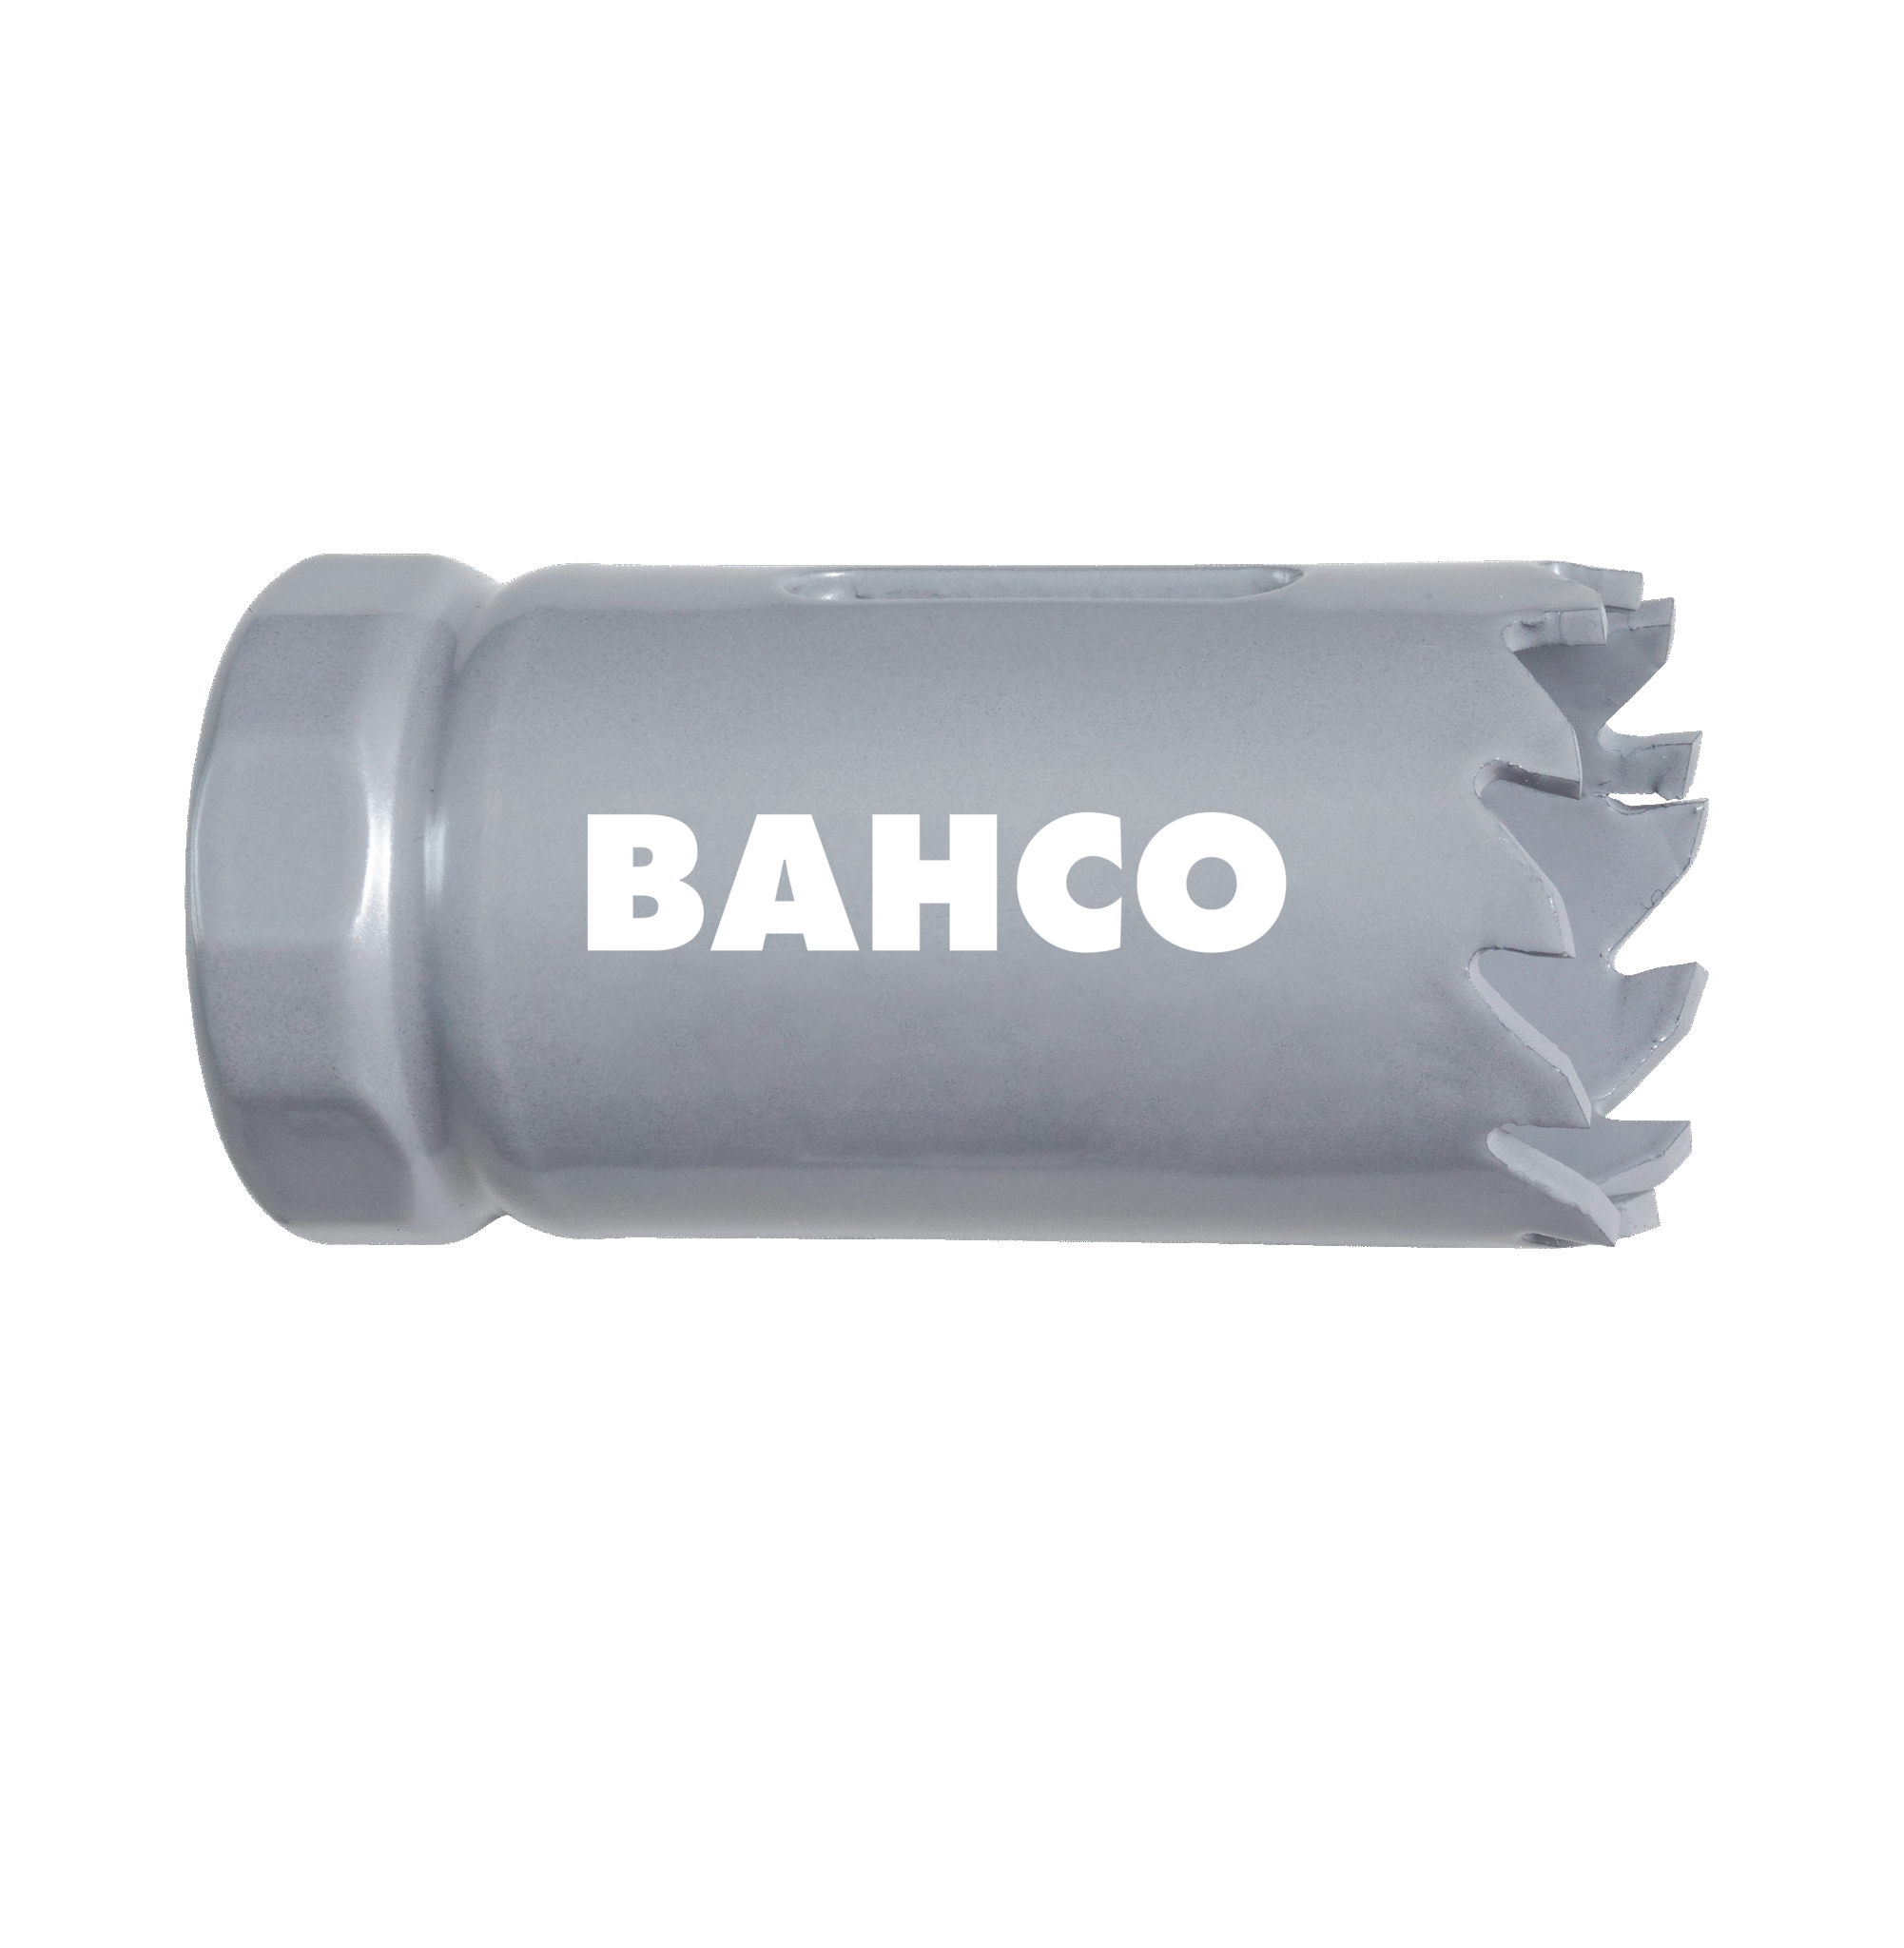 Кольцевые пилы с твердосплавными напайками BAHCO 3832-76